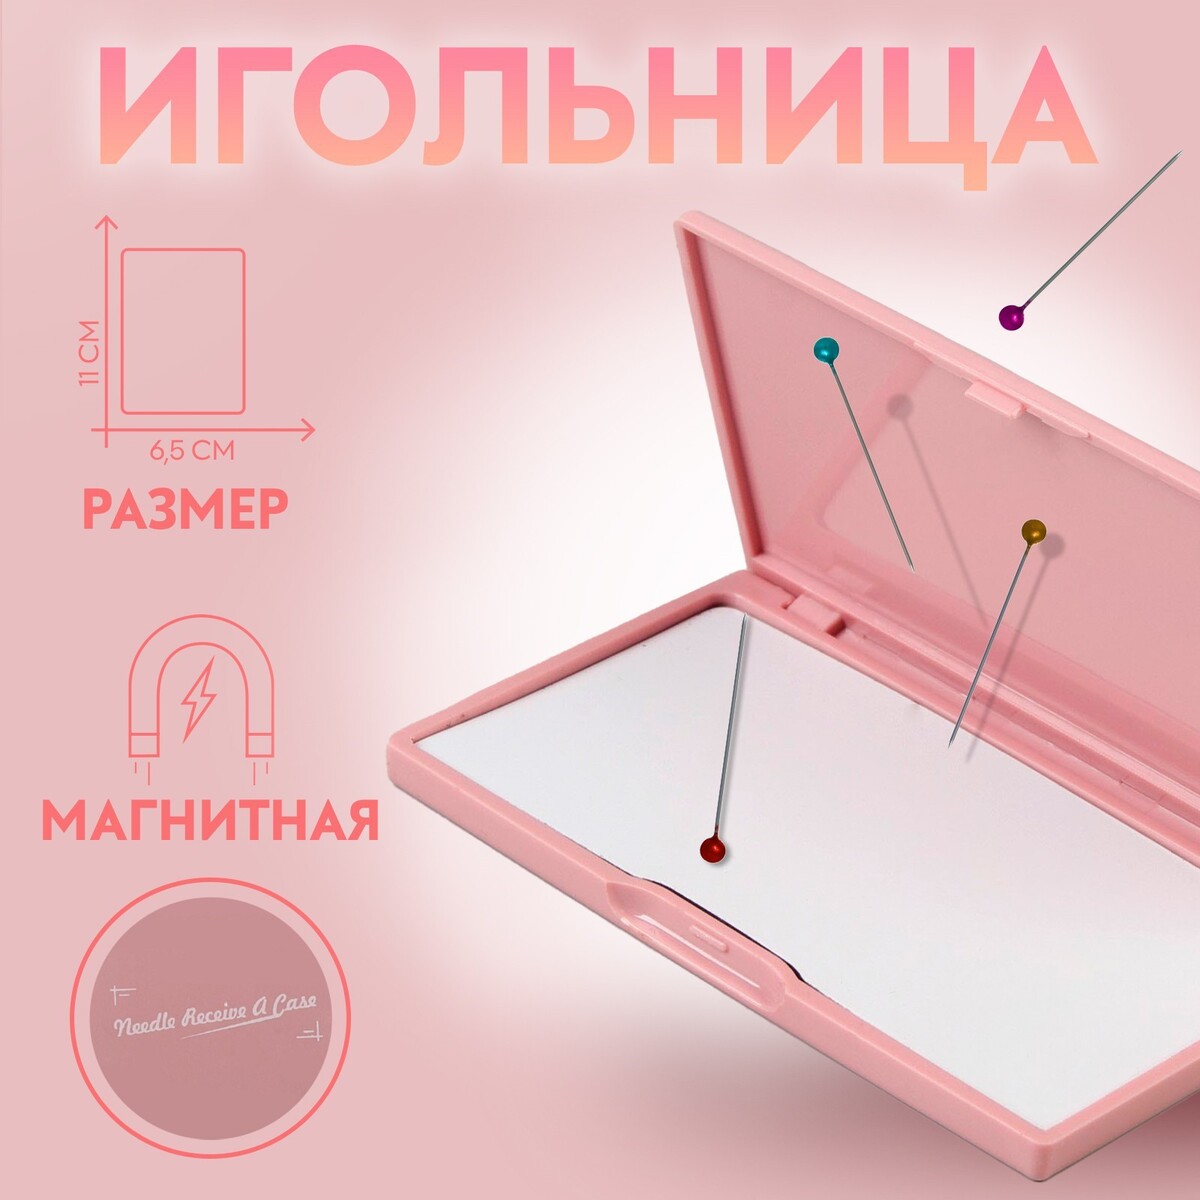 Игольница магнитная, 11 × 6,5 см, цвет светло-розовый игольница магнитная 11 × 6 5 см темно бирюзовый